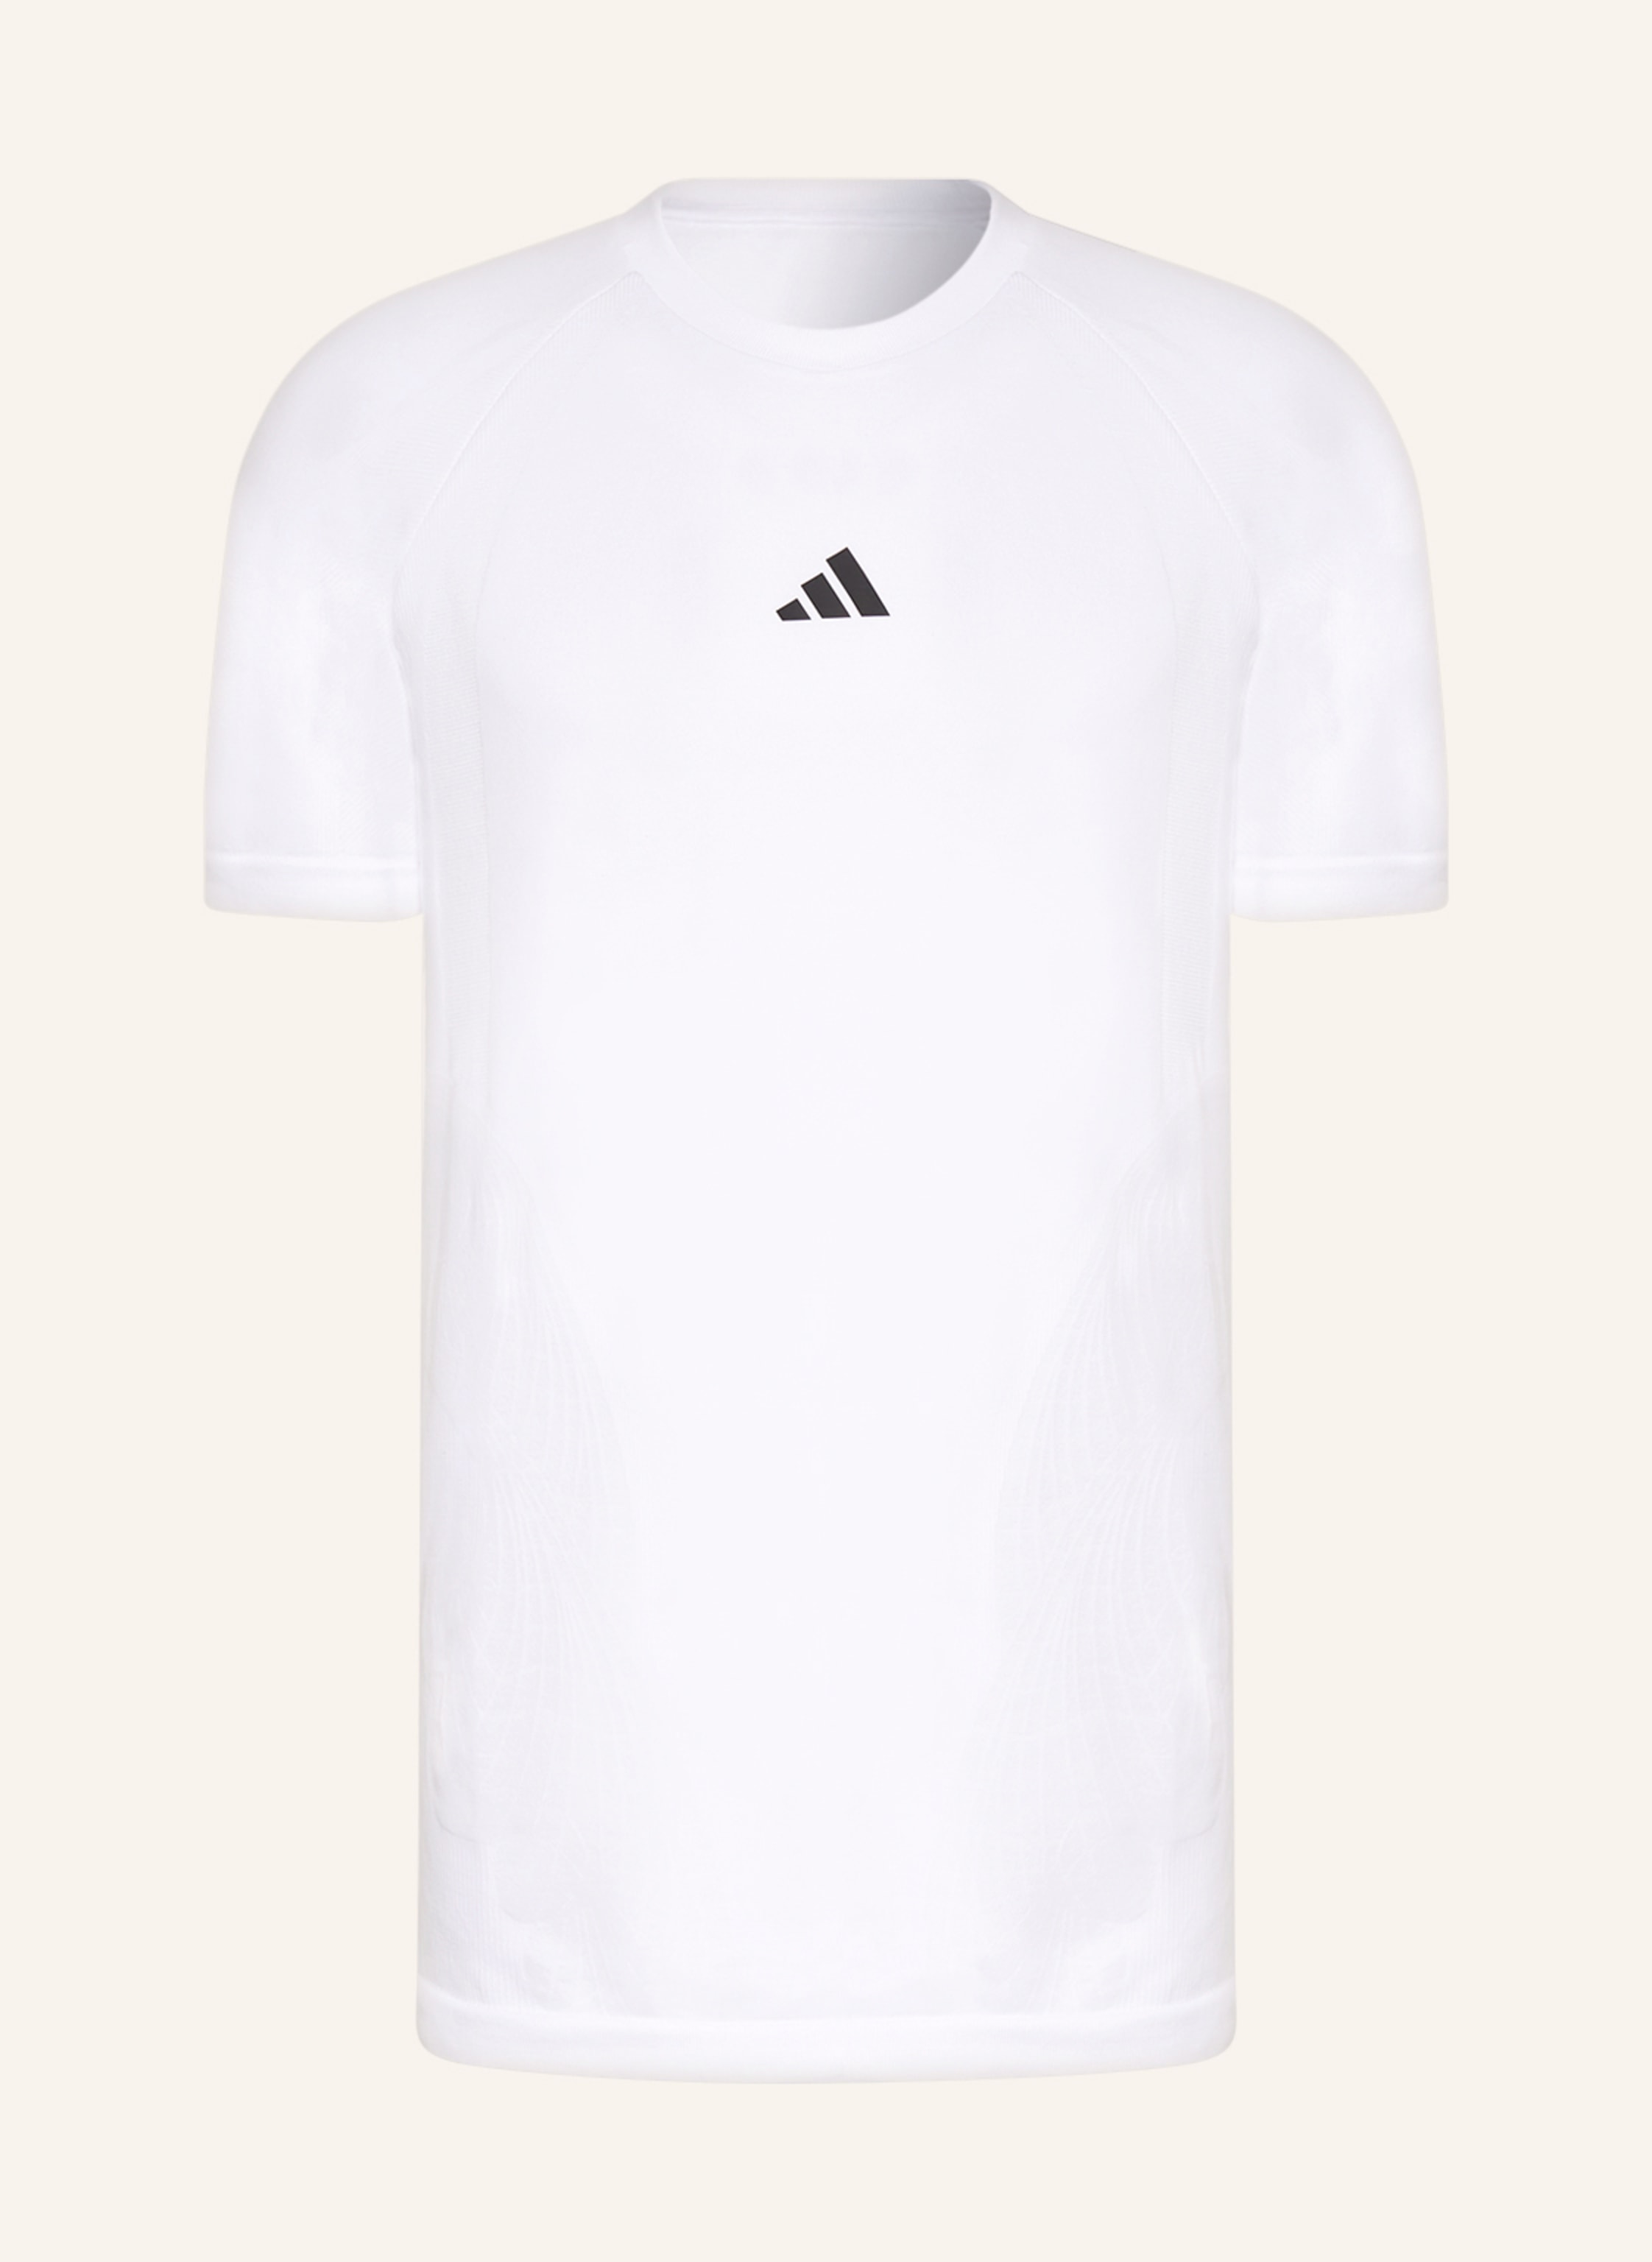 adidas T-shirt white SEAMLESS PRO in AEROREAY